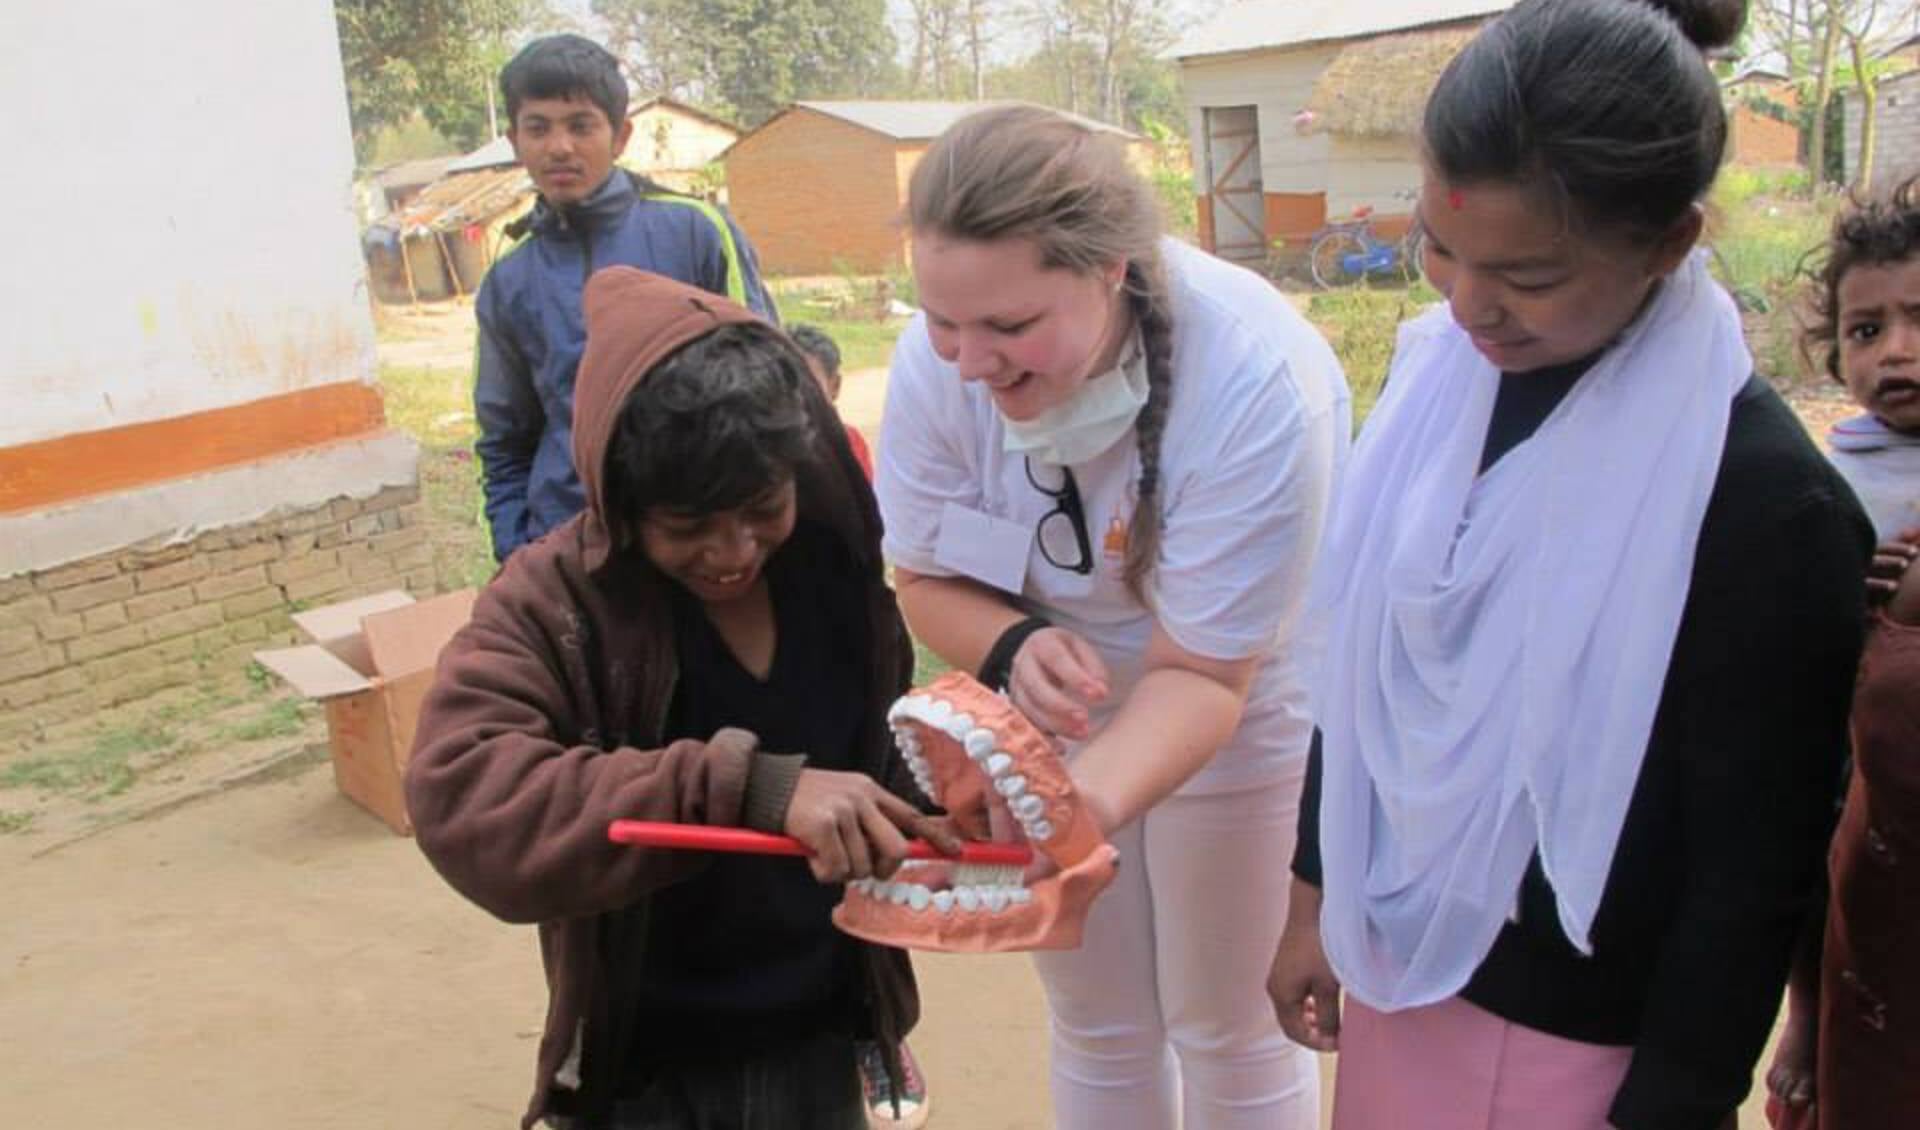 Lotte legt in Nepal aan kinderen uit hoe tandenpoetsen werkt